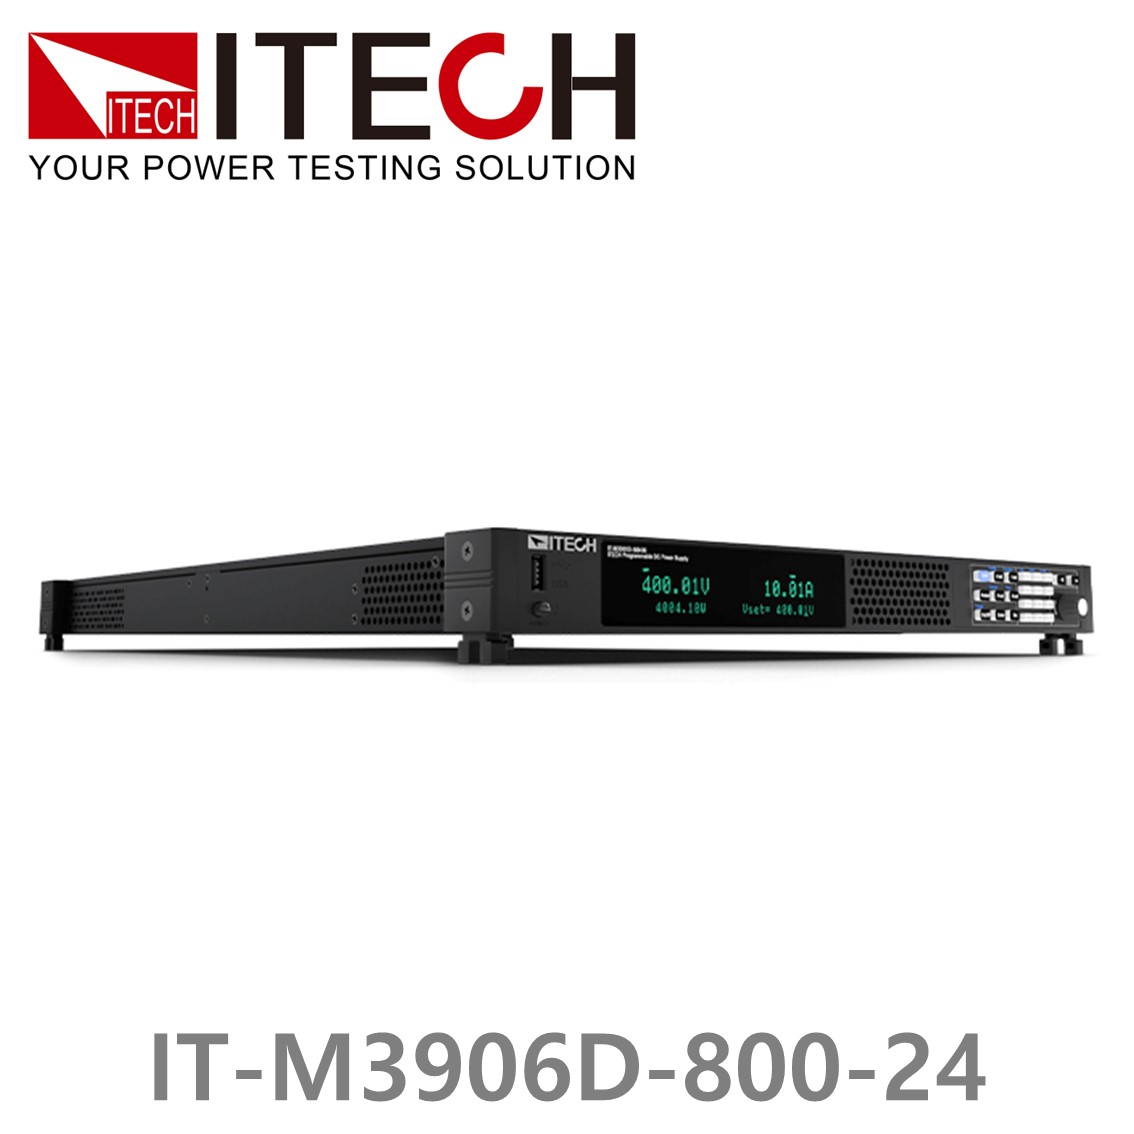 [ ITECH ] IT-M3906D-800-24 양방향 프로그래머블 DC전원공급기, DC파워서플라이